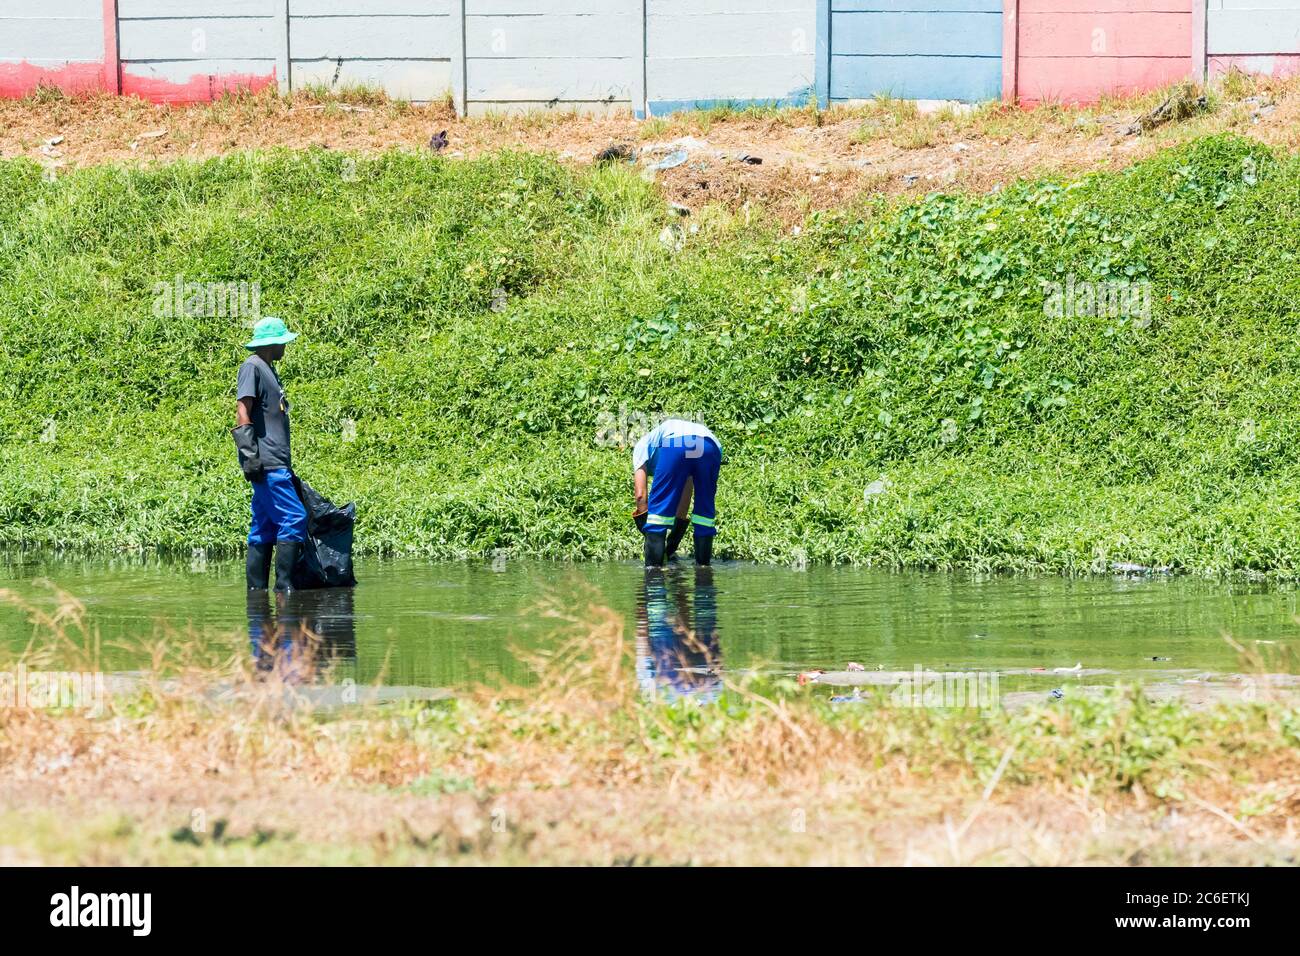 Les hommes ou les personnes africains qui nettoient une rivière polluée au Cap, en Afrique du Sud, ont un concept de sensibilisation et de soins environnementaux en Afrique Banque D'Images